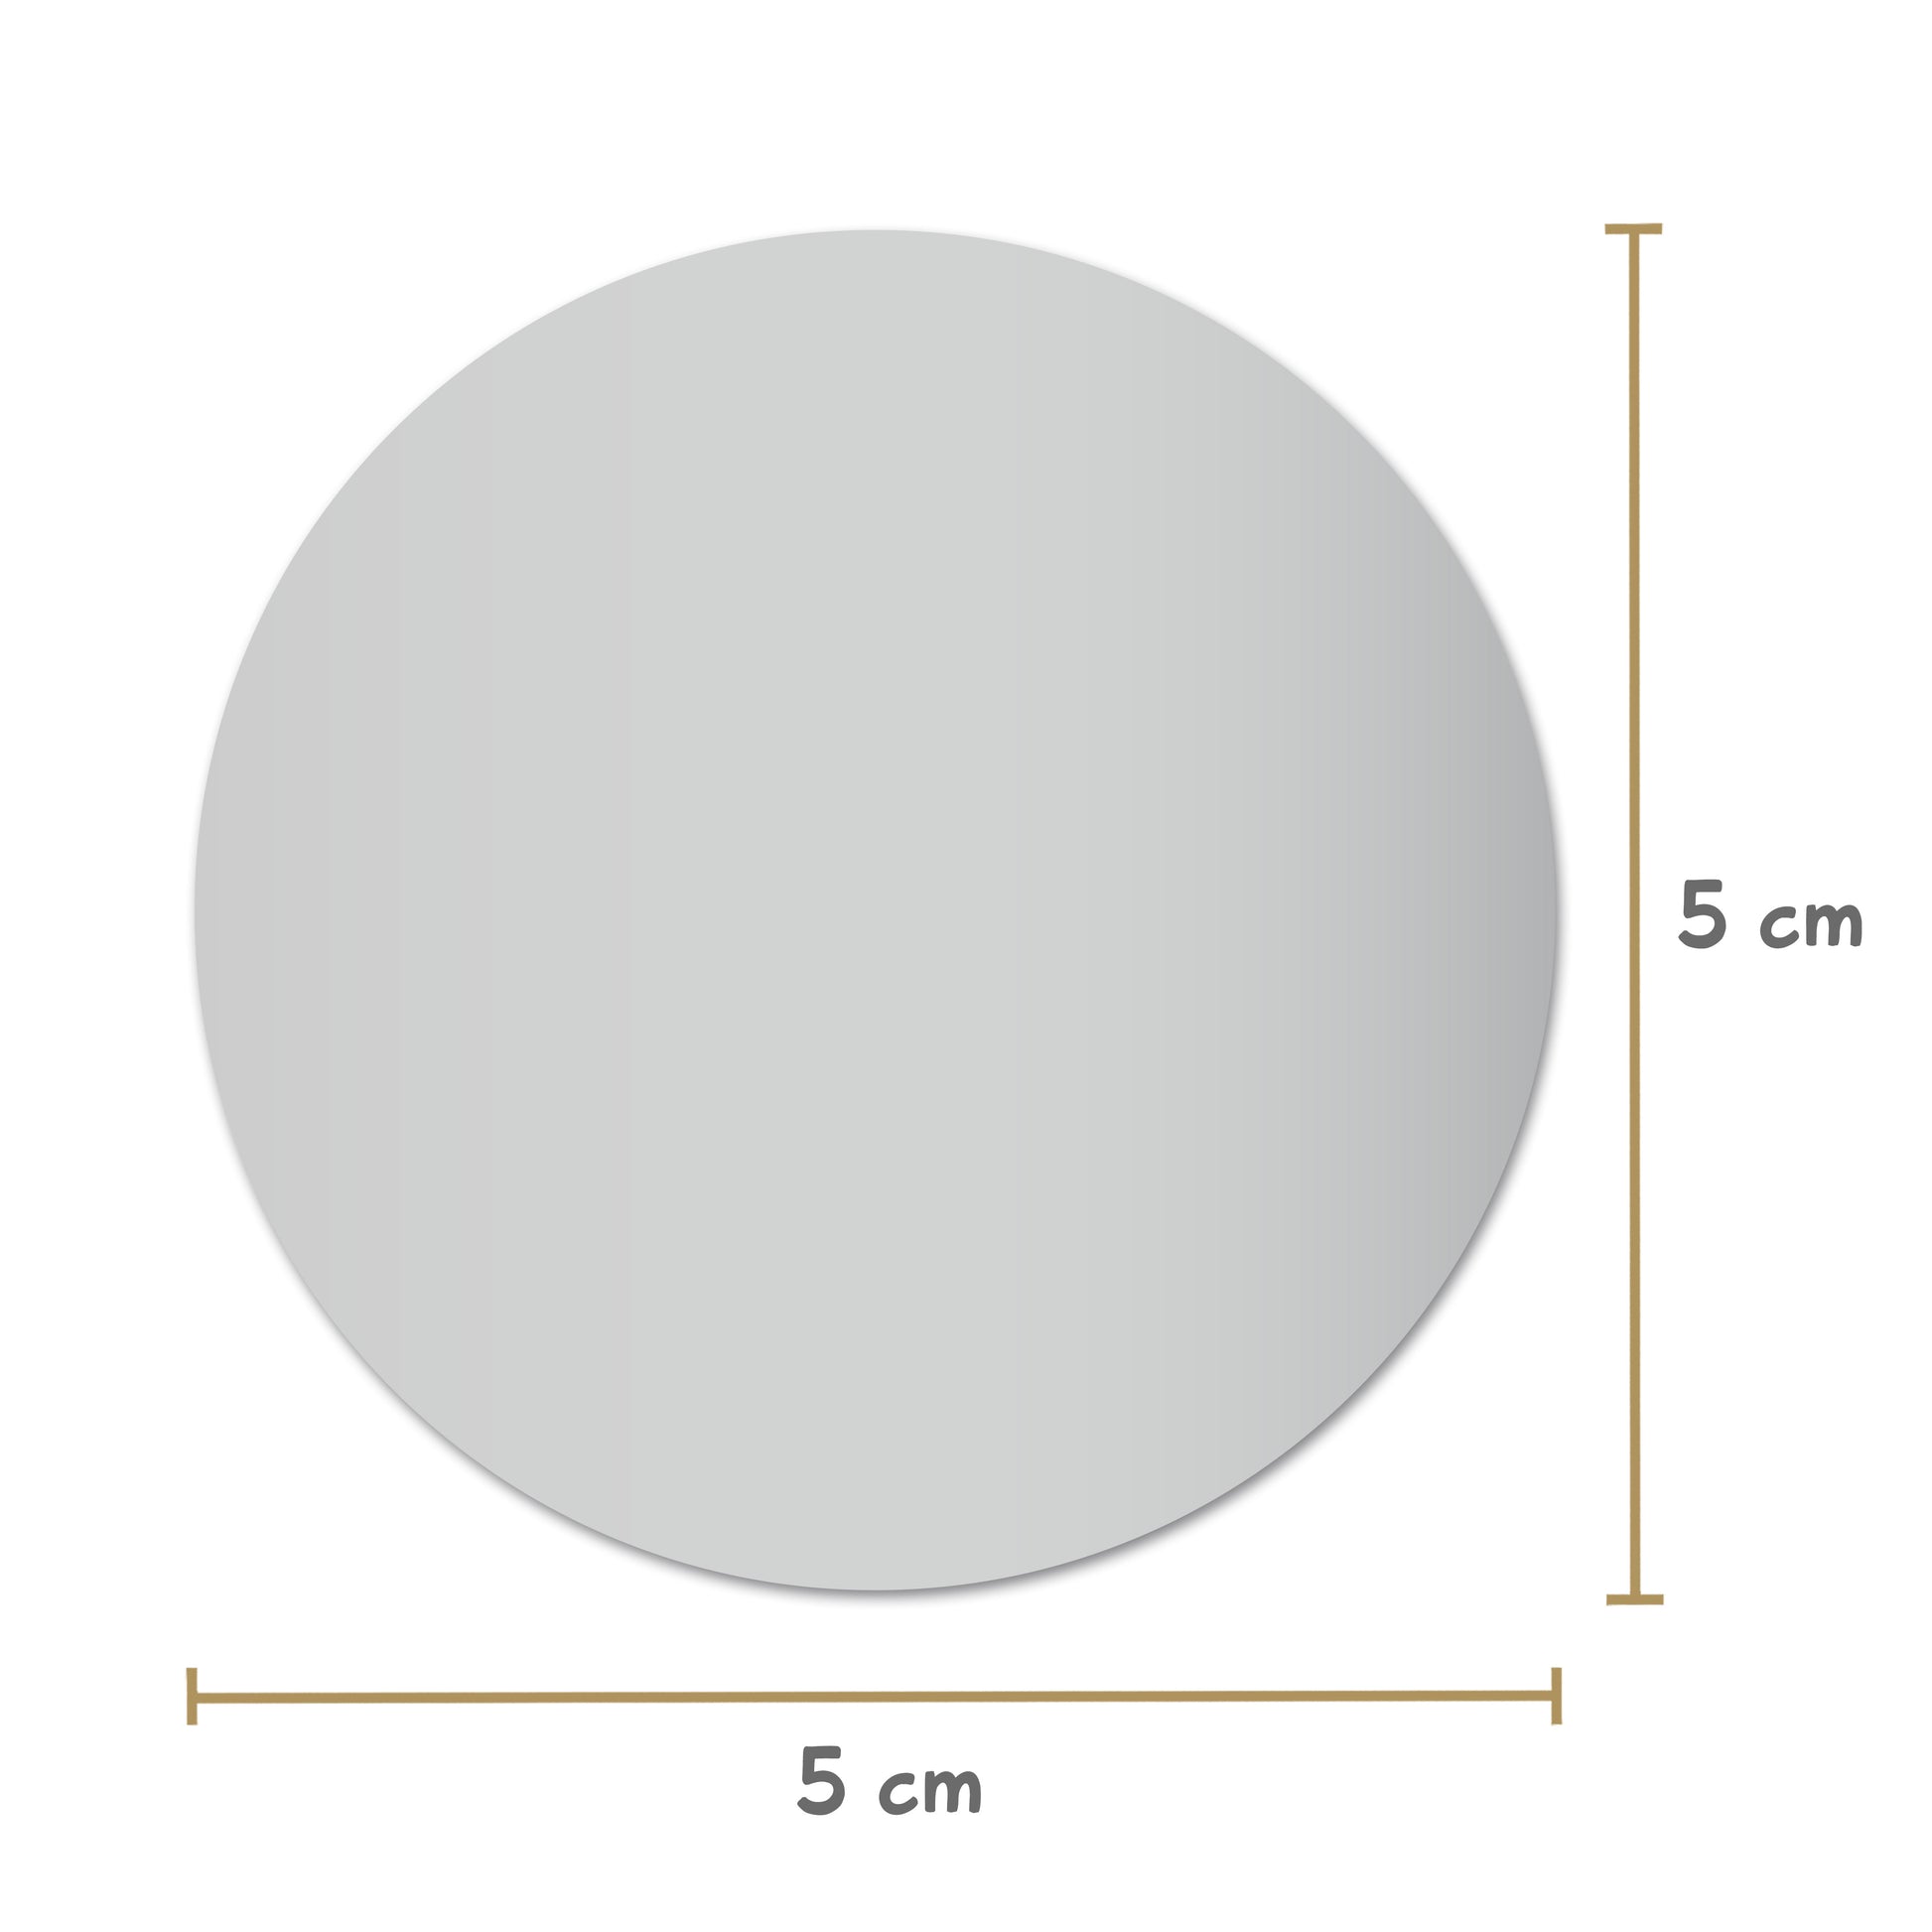 Ansicht der Maße: Rubbeletiketten rund 5 cm Durchmesser